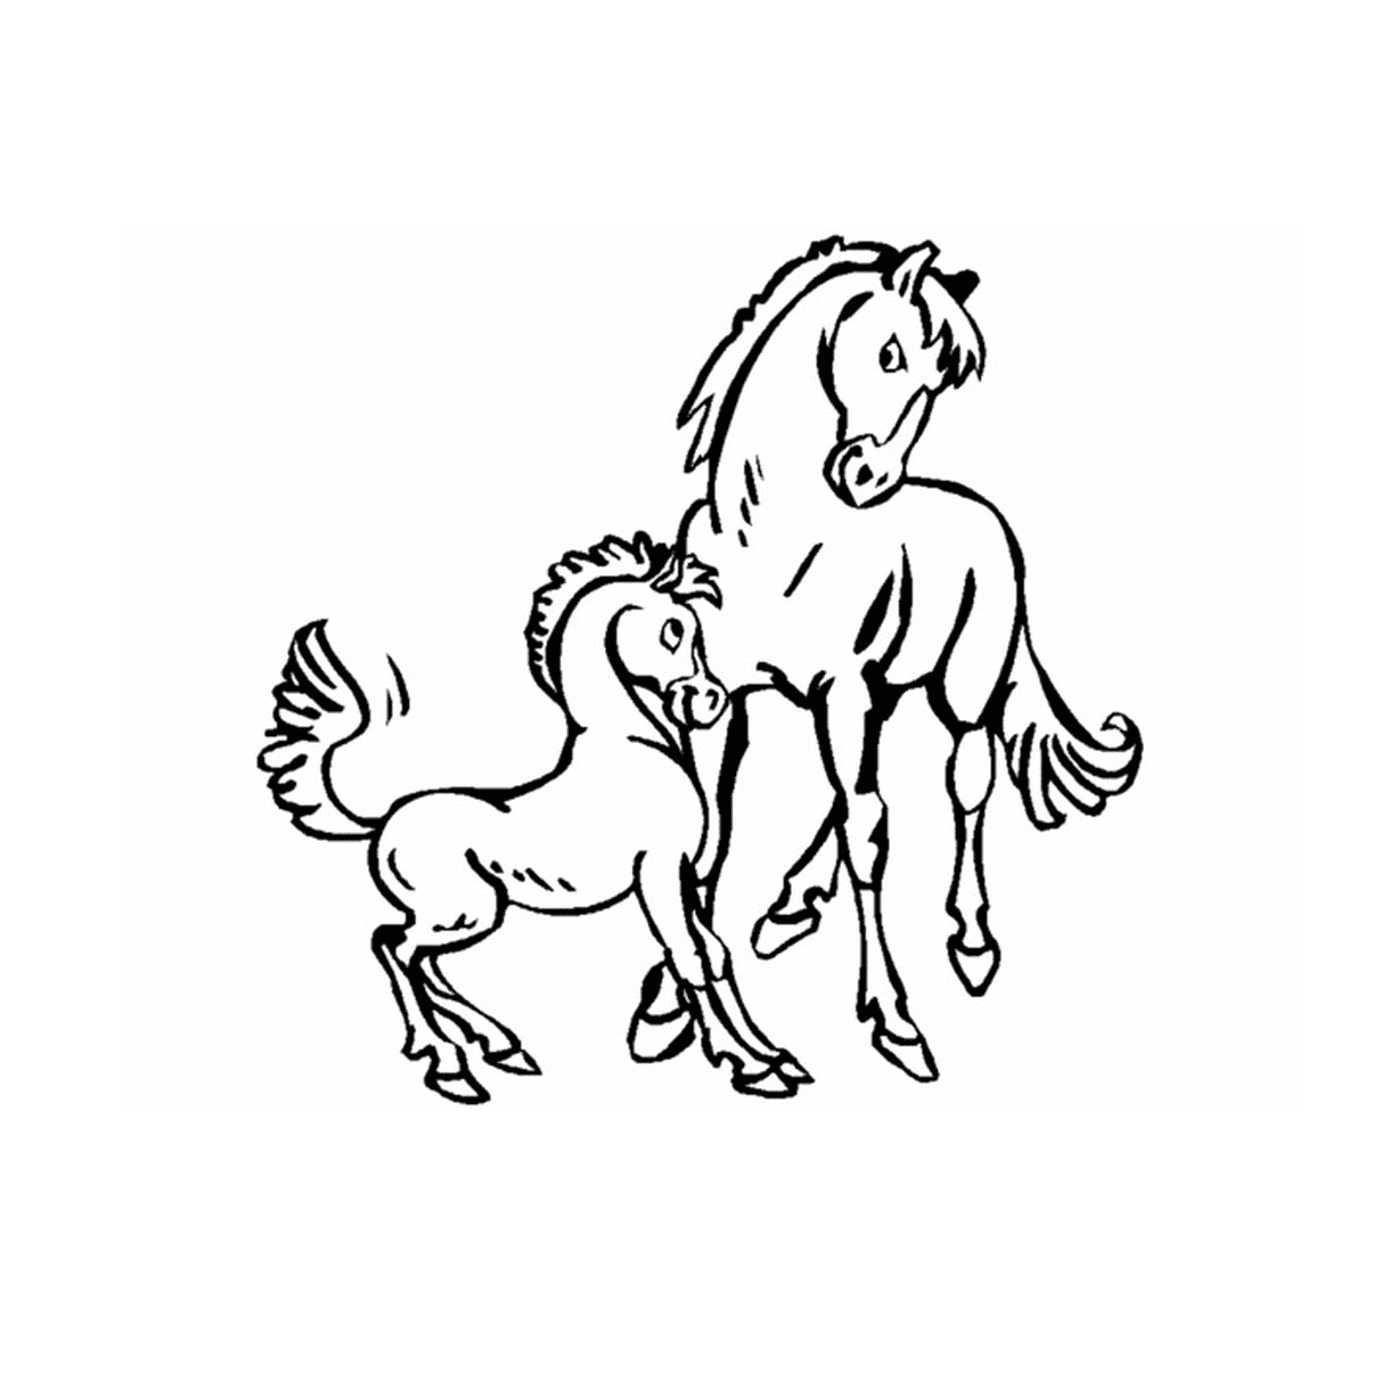  Пони и лошади, нежная семейная связь 